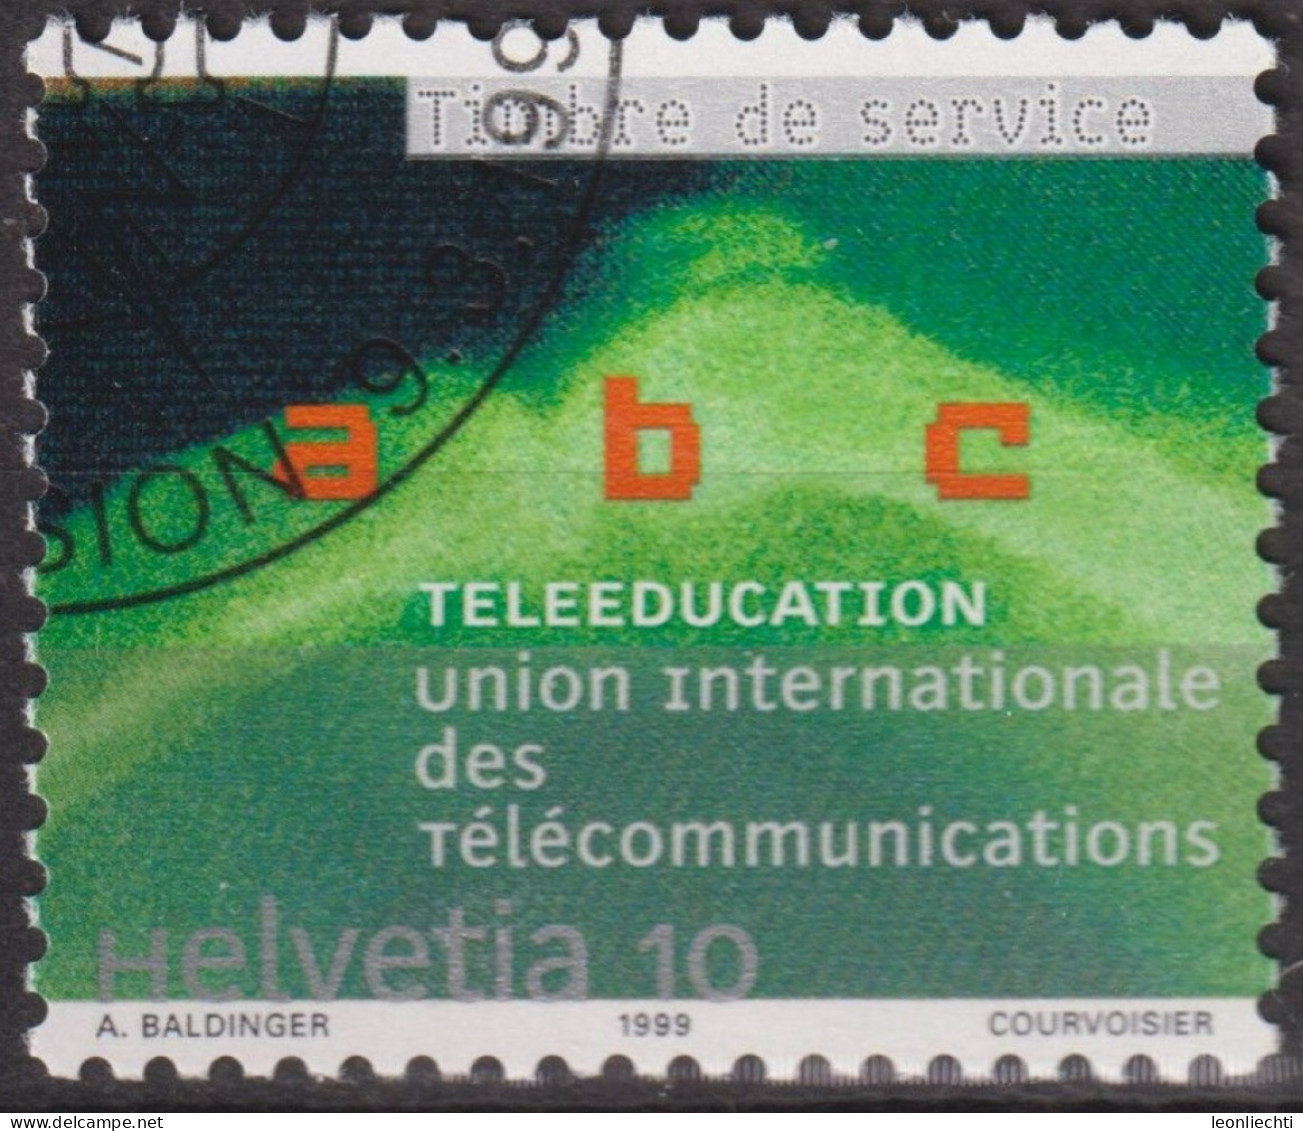 1999 CH / Dienstmarke UIT ° Mi:CH-UIT 16, Yt:CH S472, Zum:CH-UIT 16, Telelernen - Service